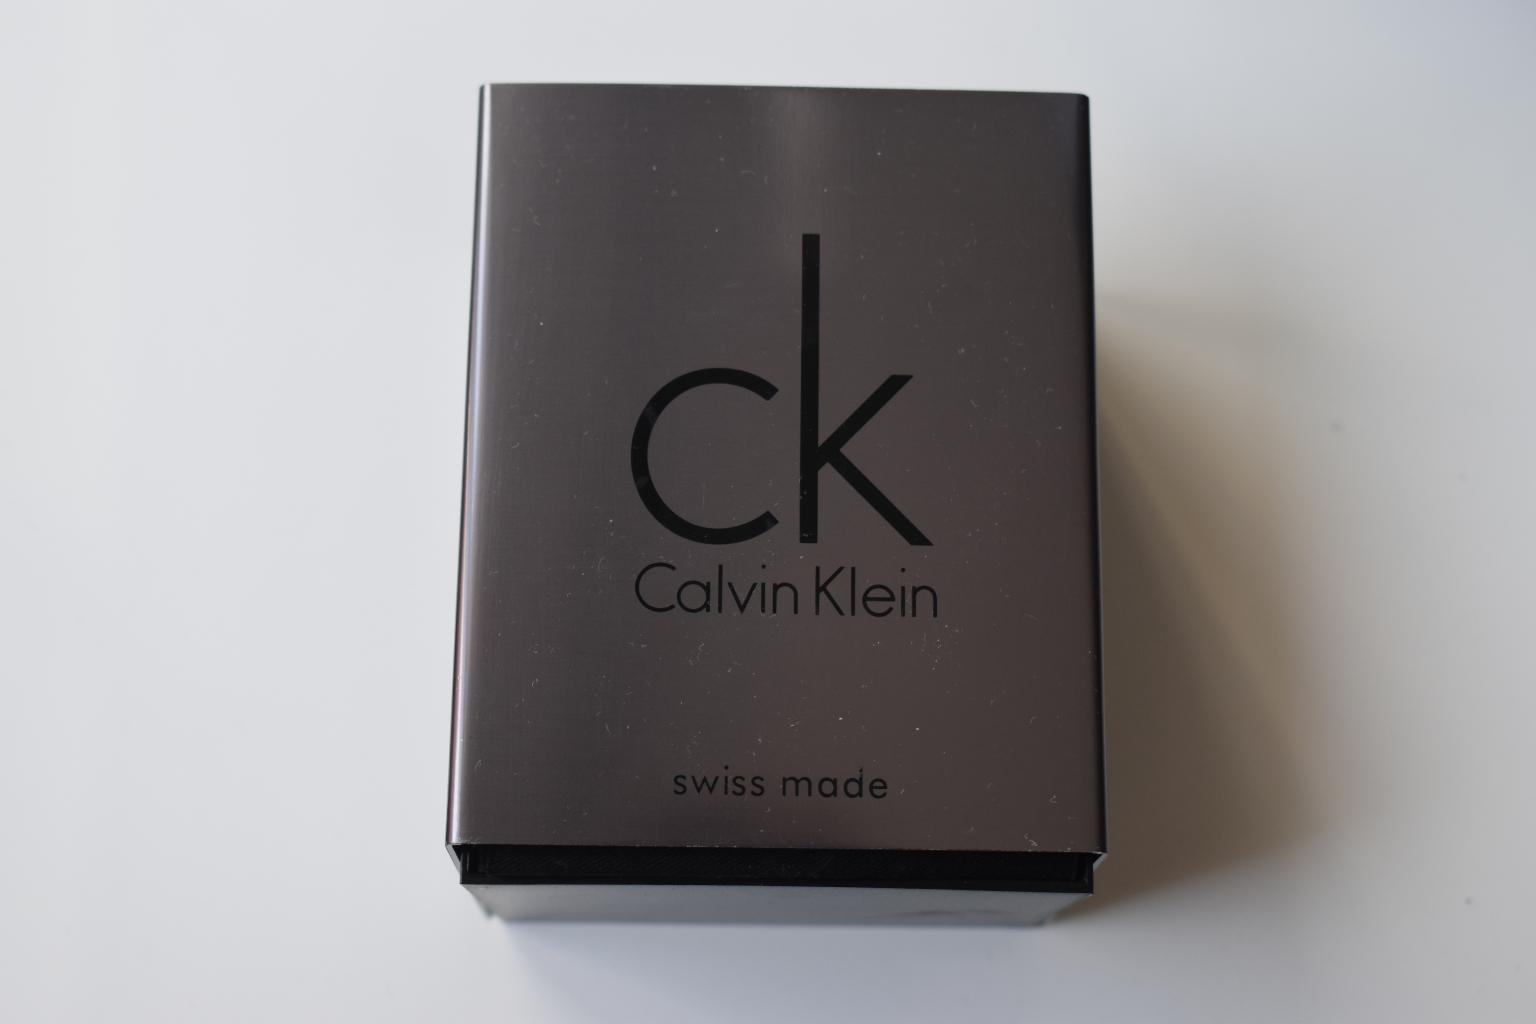 Calvin Klein Damen Armbanduhr Ray Schwarz In Dresden For 40 00 For Sale Shpock